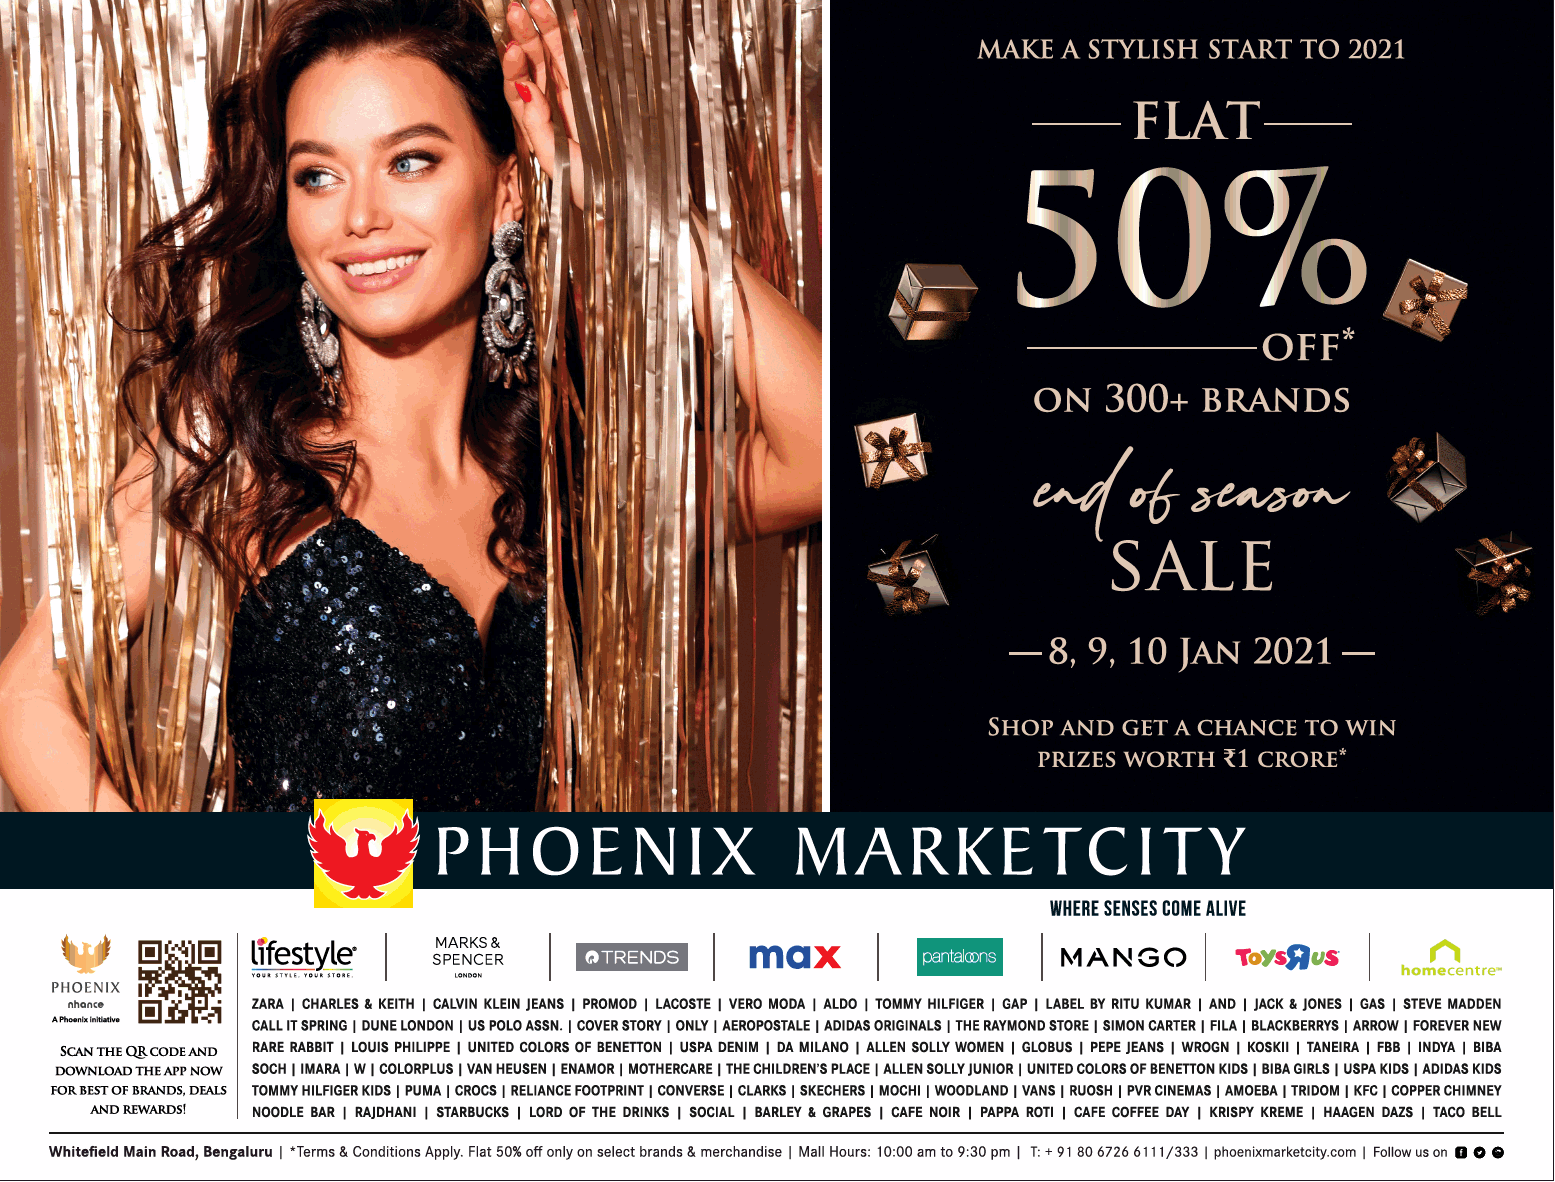 phoenix-marketcity-make-a-stylish-start-to-2021-flat-50%-off-ad-bangalore-times-08-01-2021